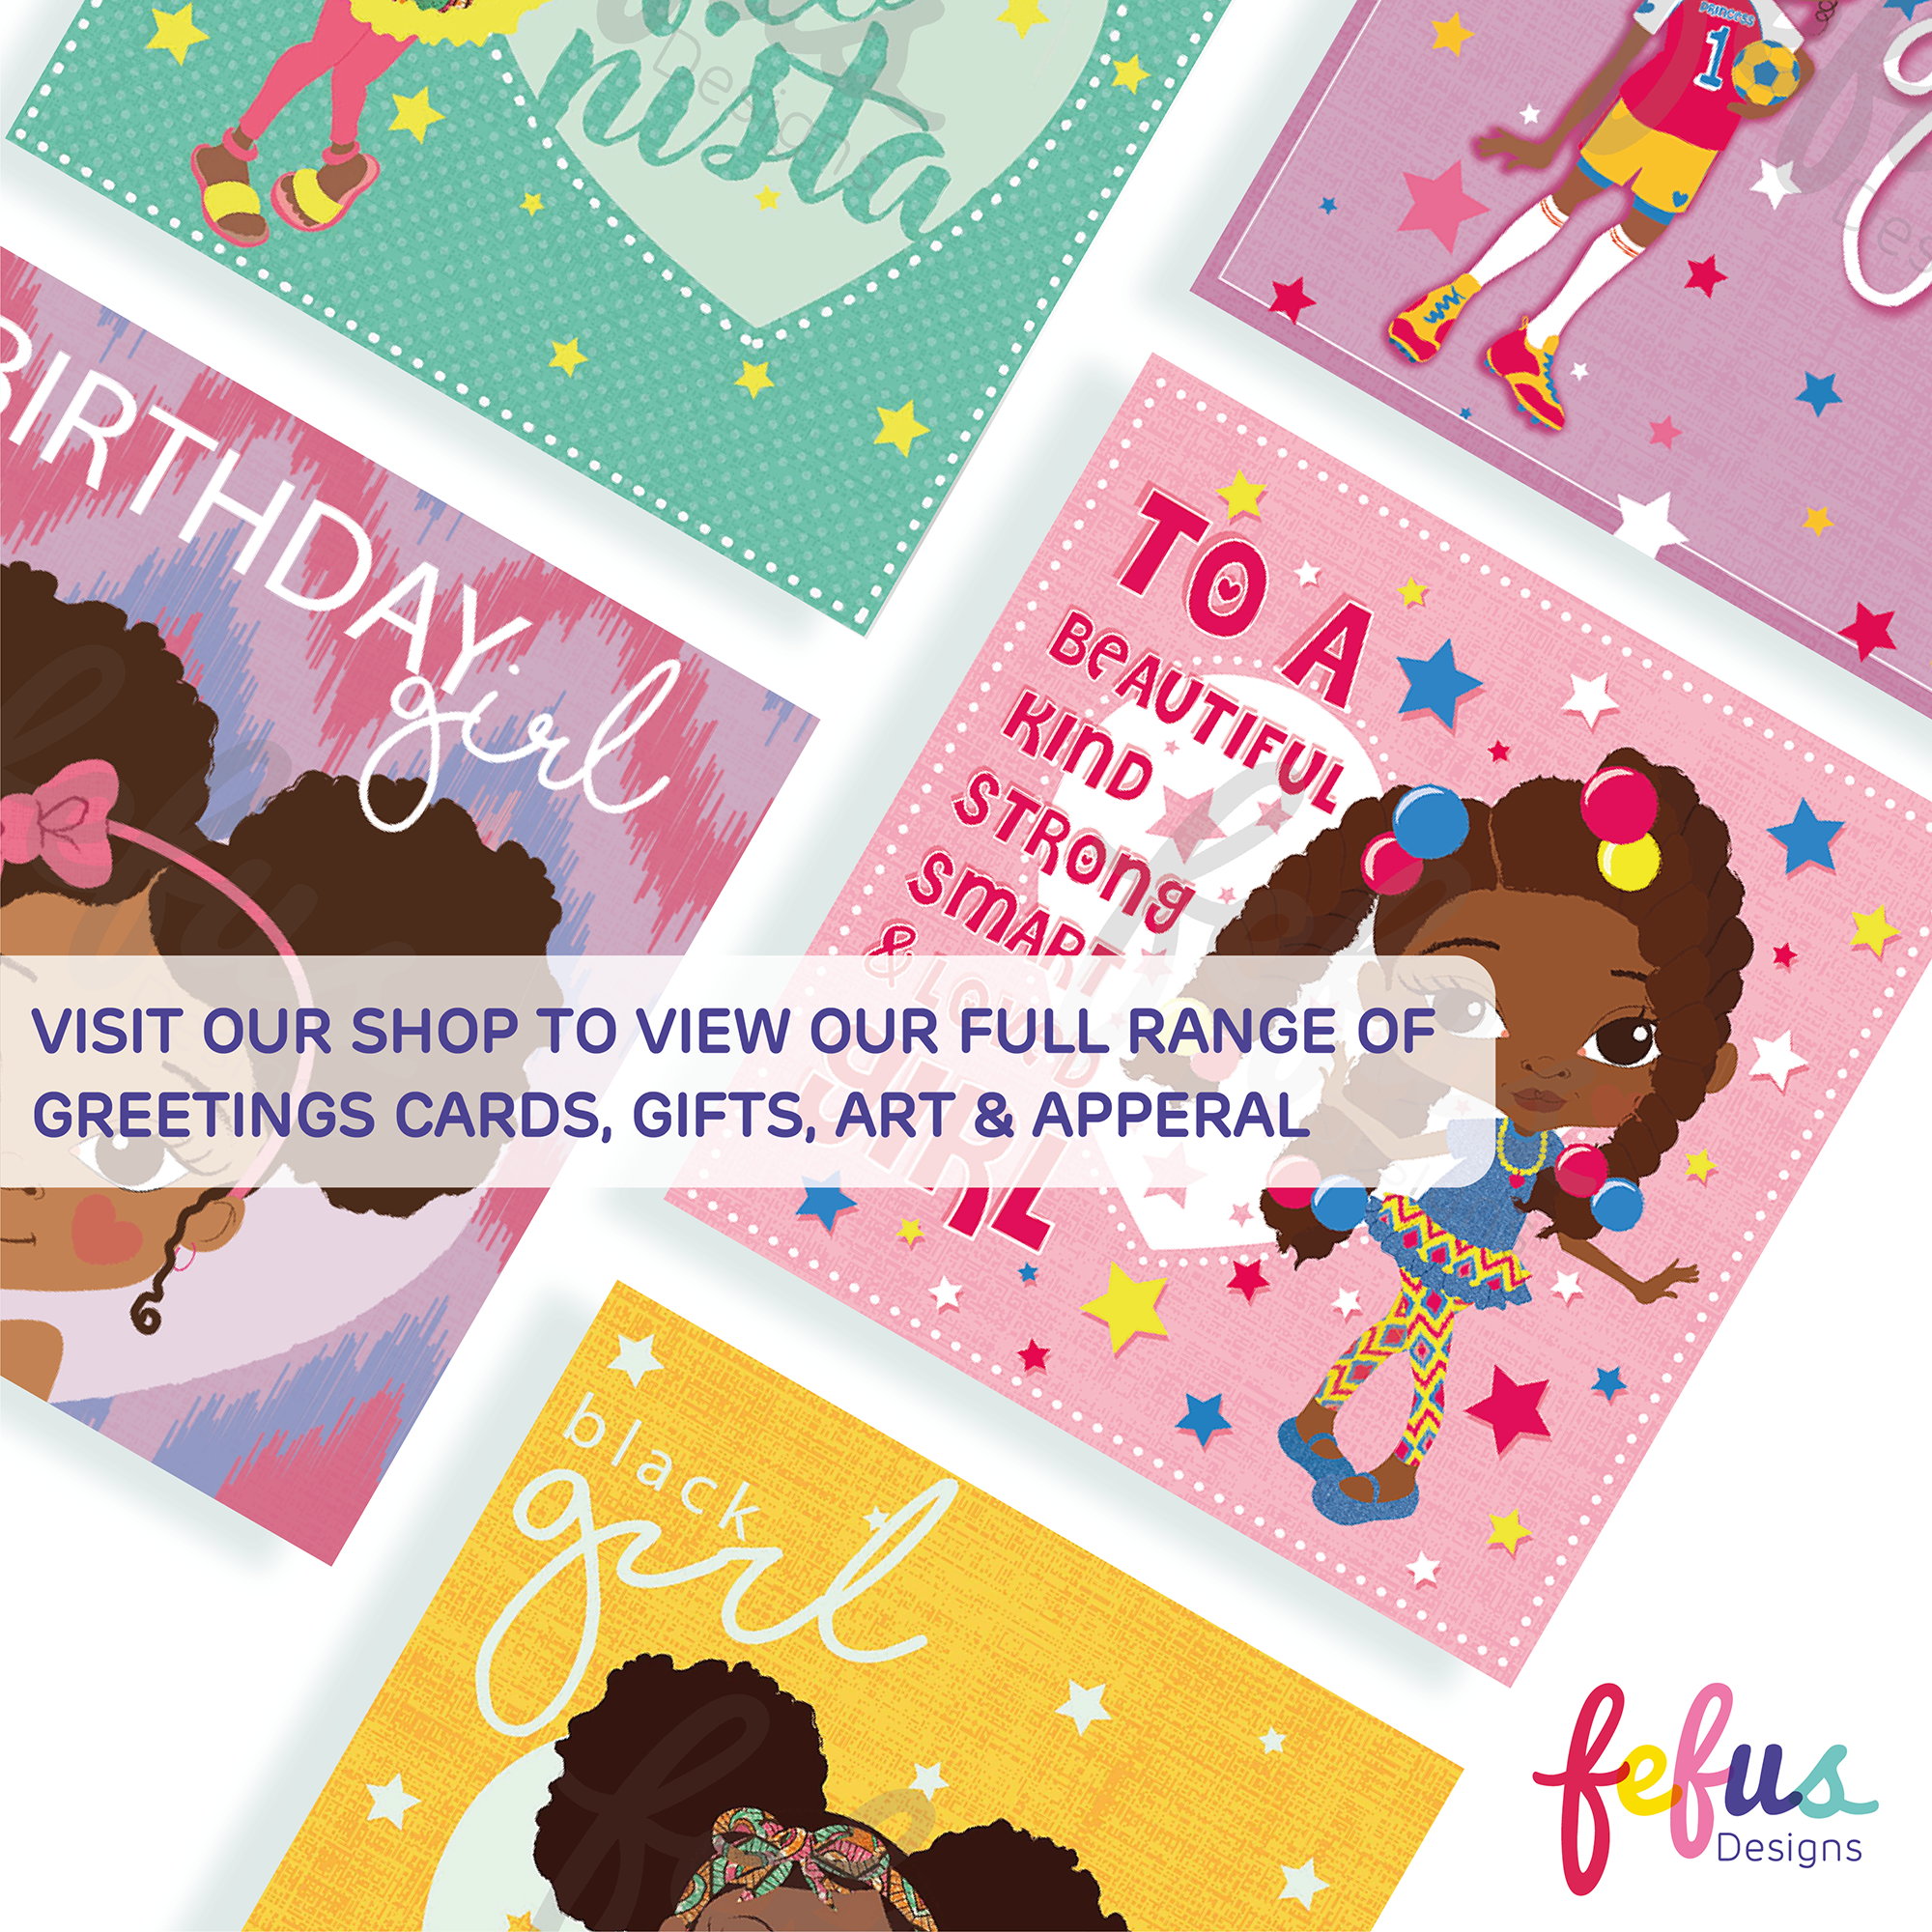 Reine - BE YOU Big Twist Girl  - Black Girls Birthday Card | Fefus designs